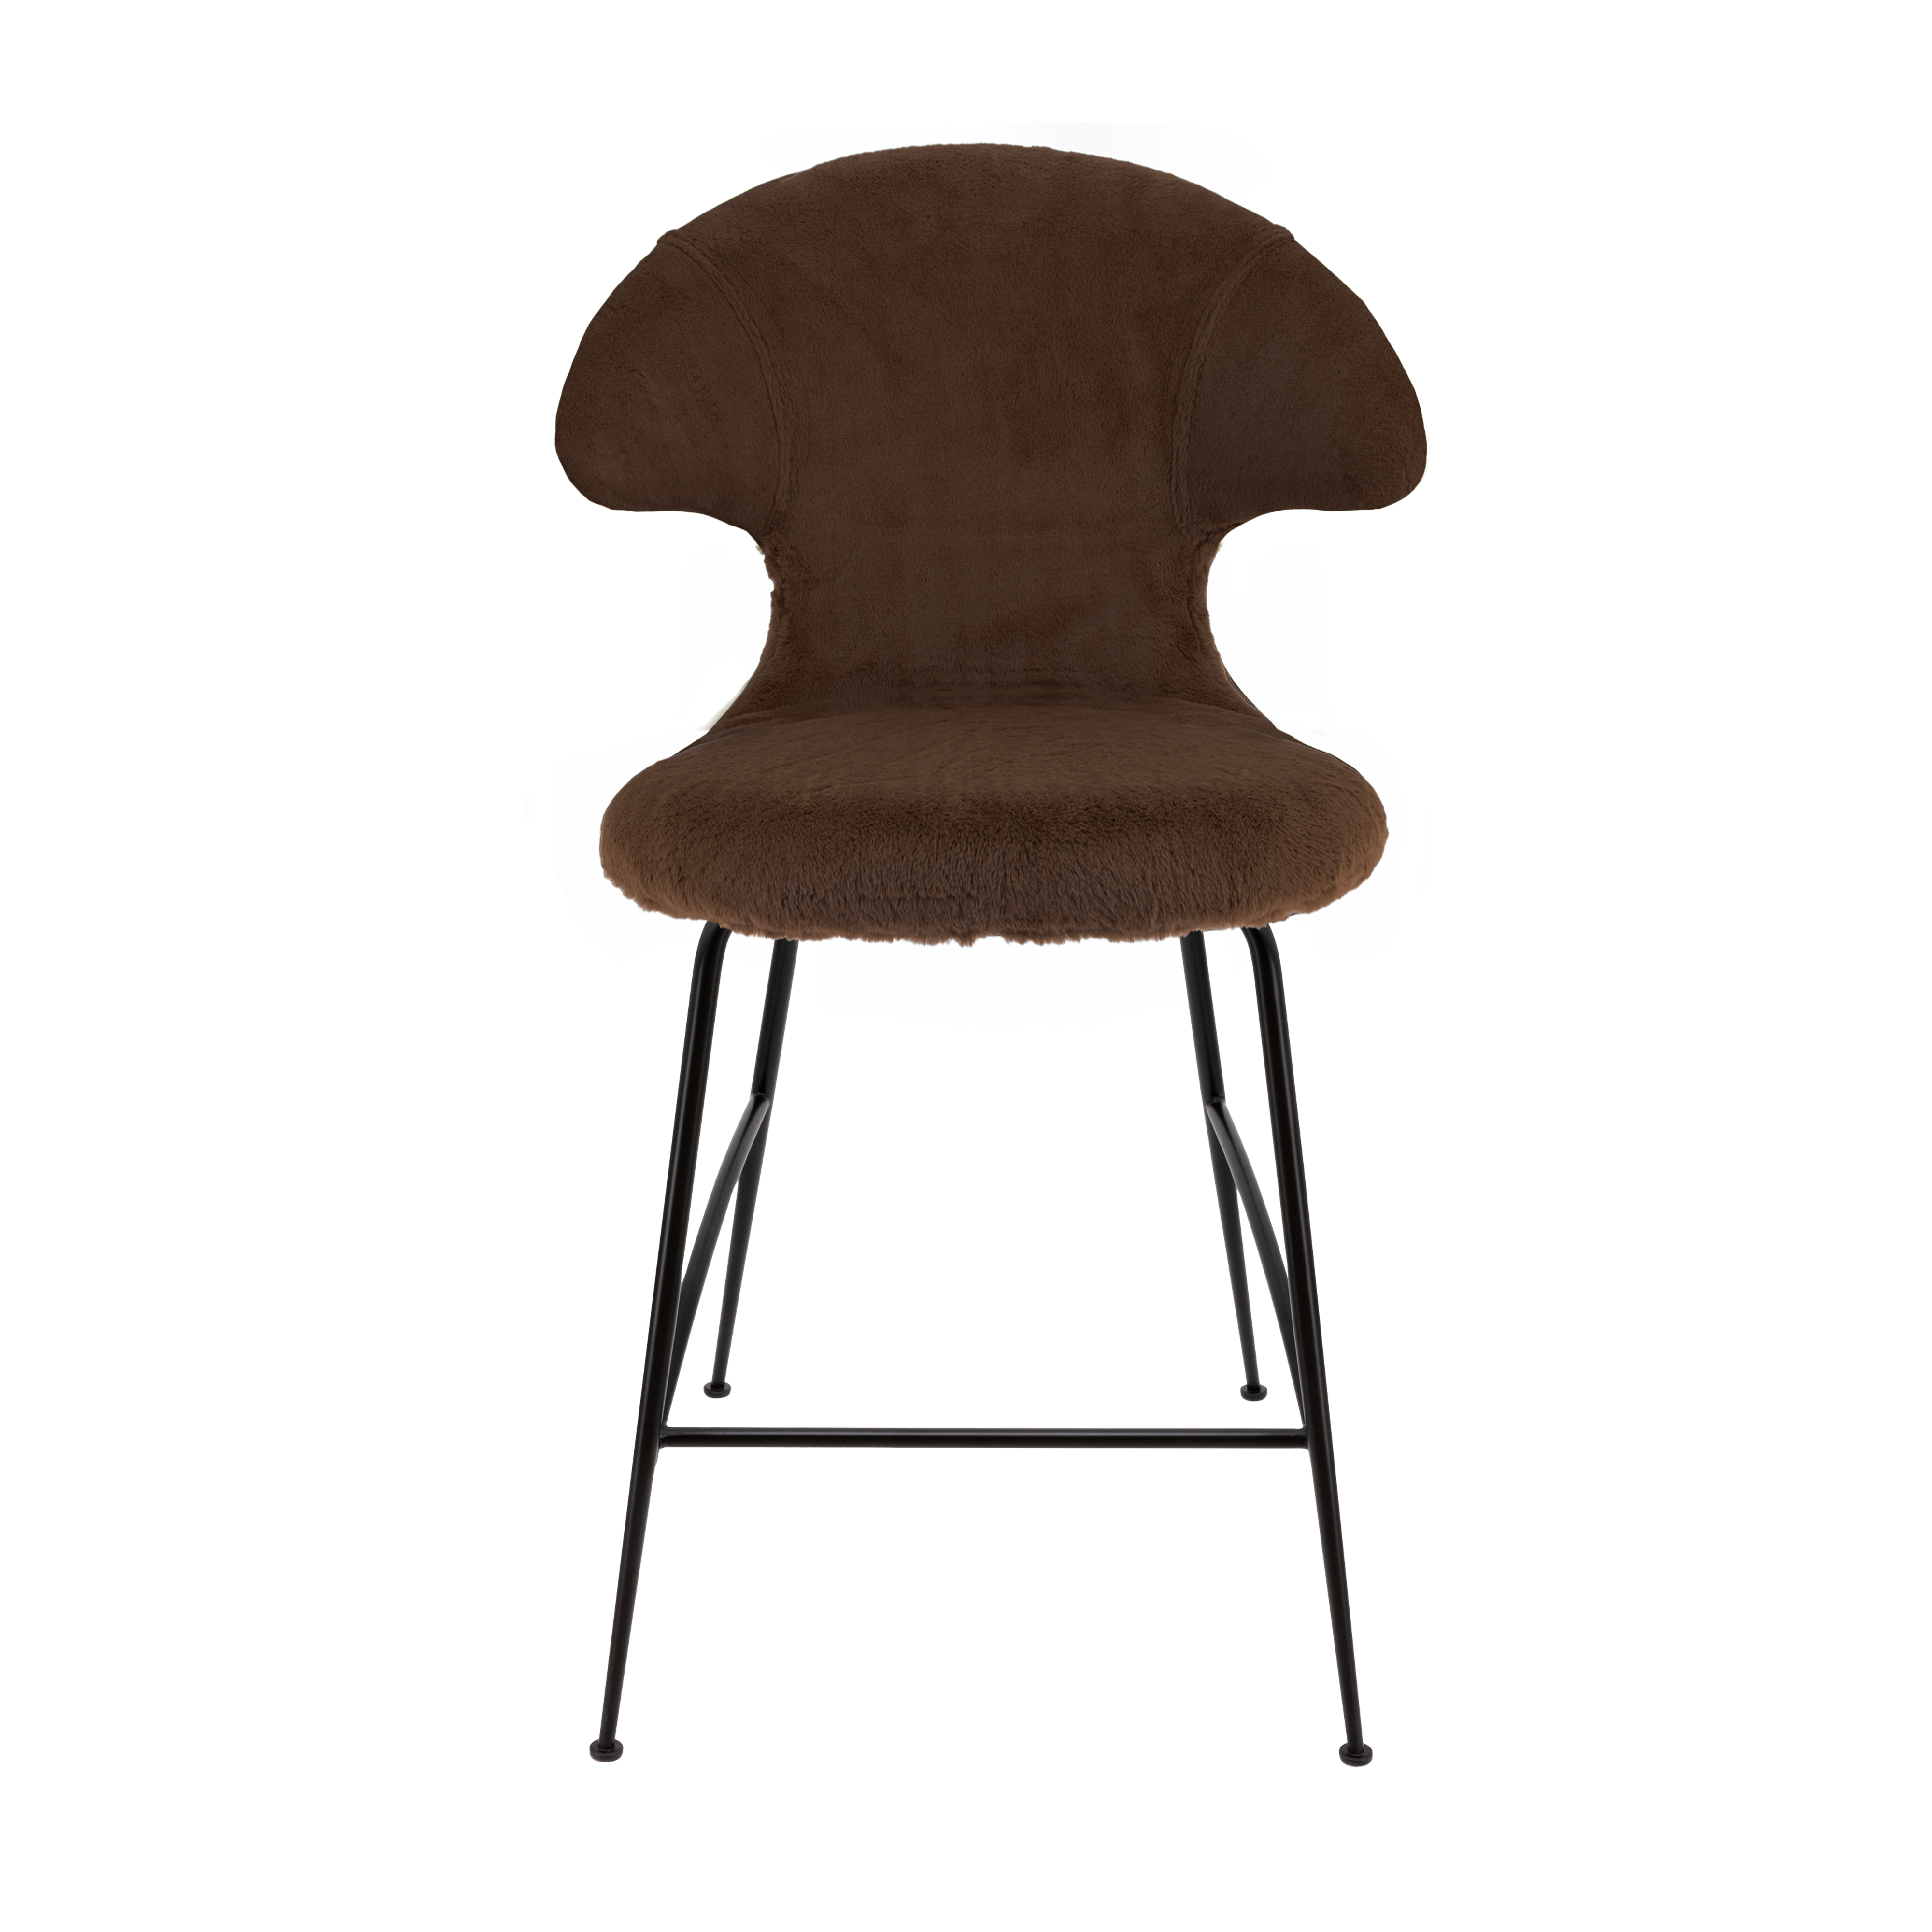 Time Flies Counter Stuhl in Teddy Brown präsentiert im Onlineshop von KAQTU Design AG. Barstuhl mit Armlehne ist von Umage